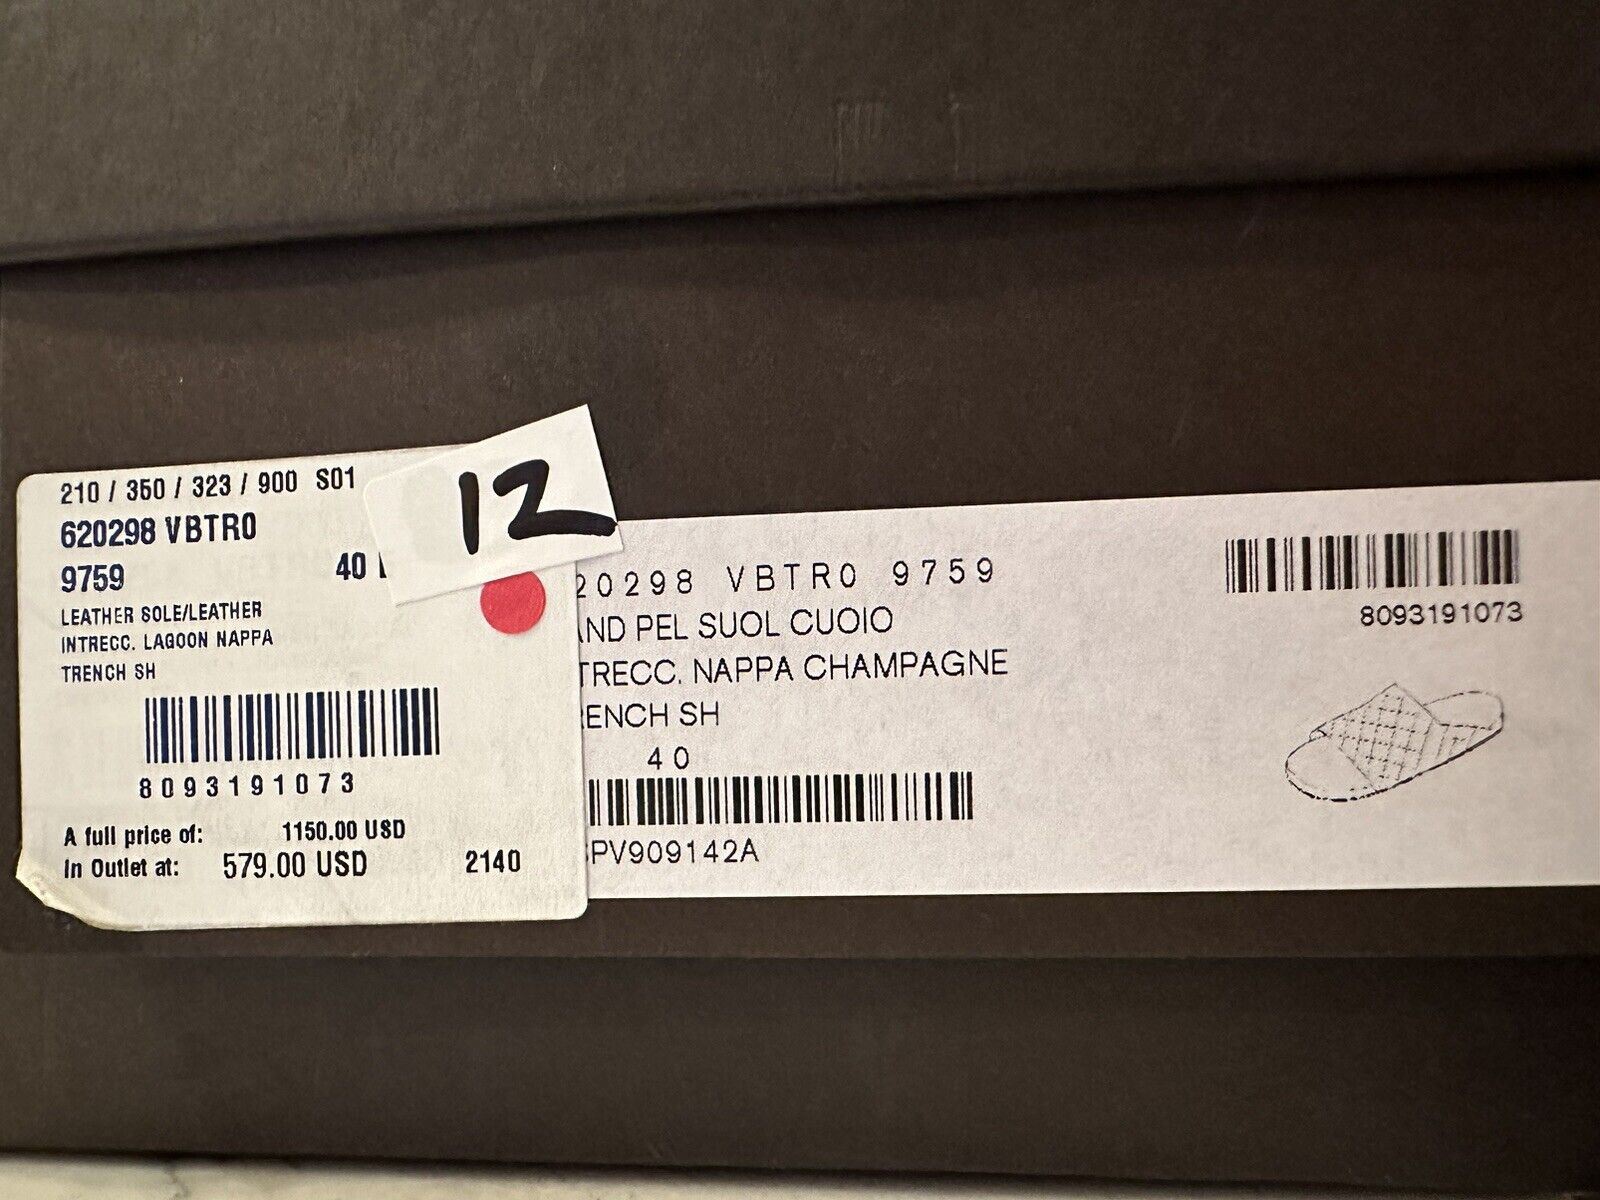 Мужские кожаные сандалии Intrecciato Bottega Veneta за 1150 долларов США, белые 7 США 620298 IT